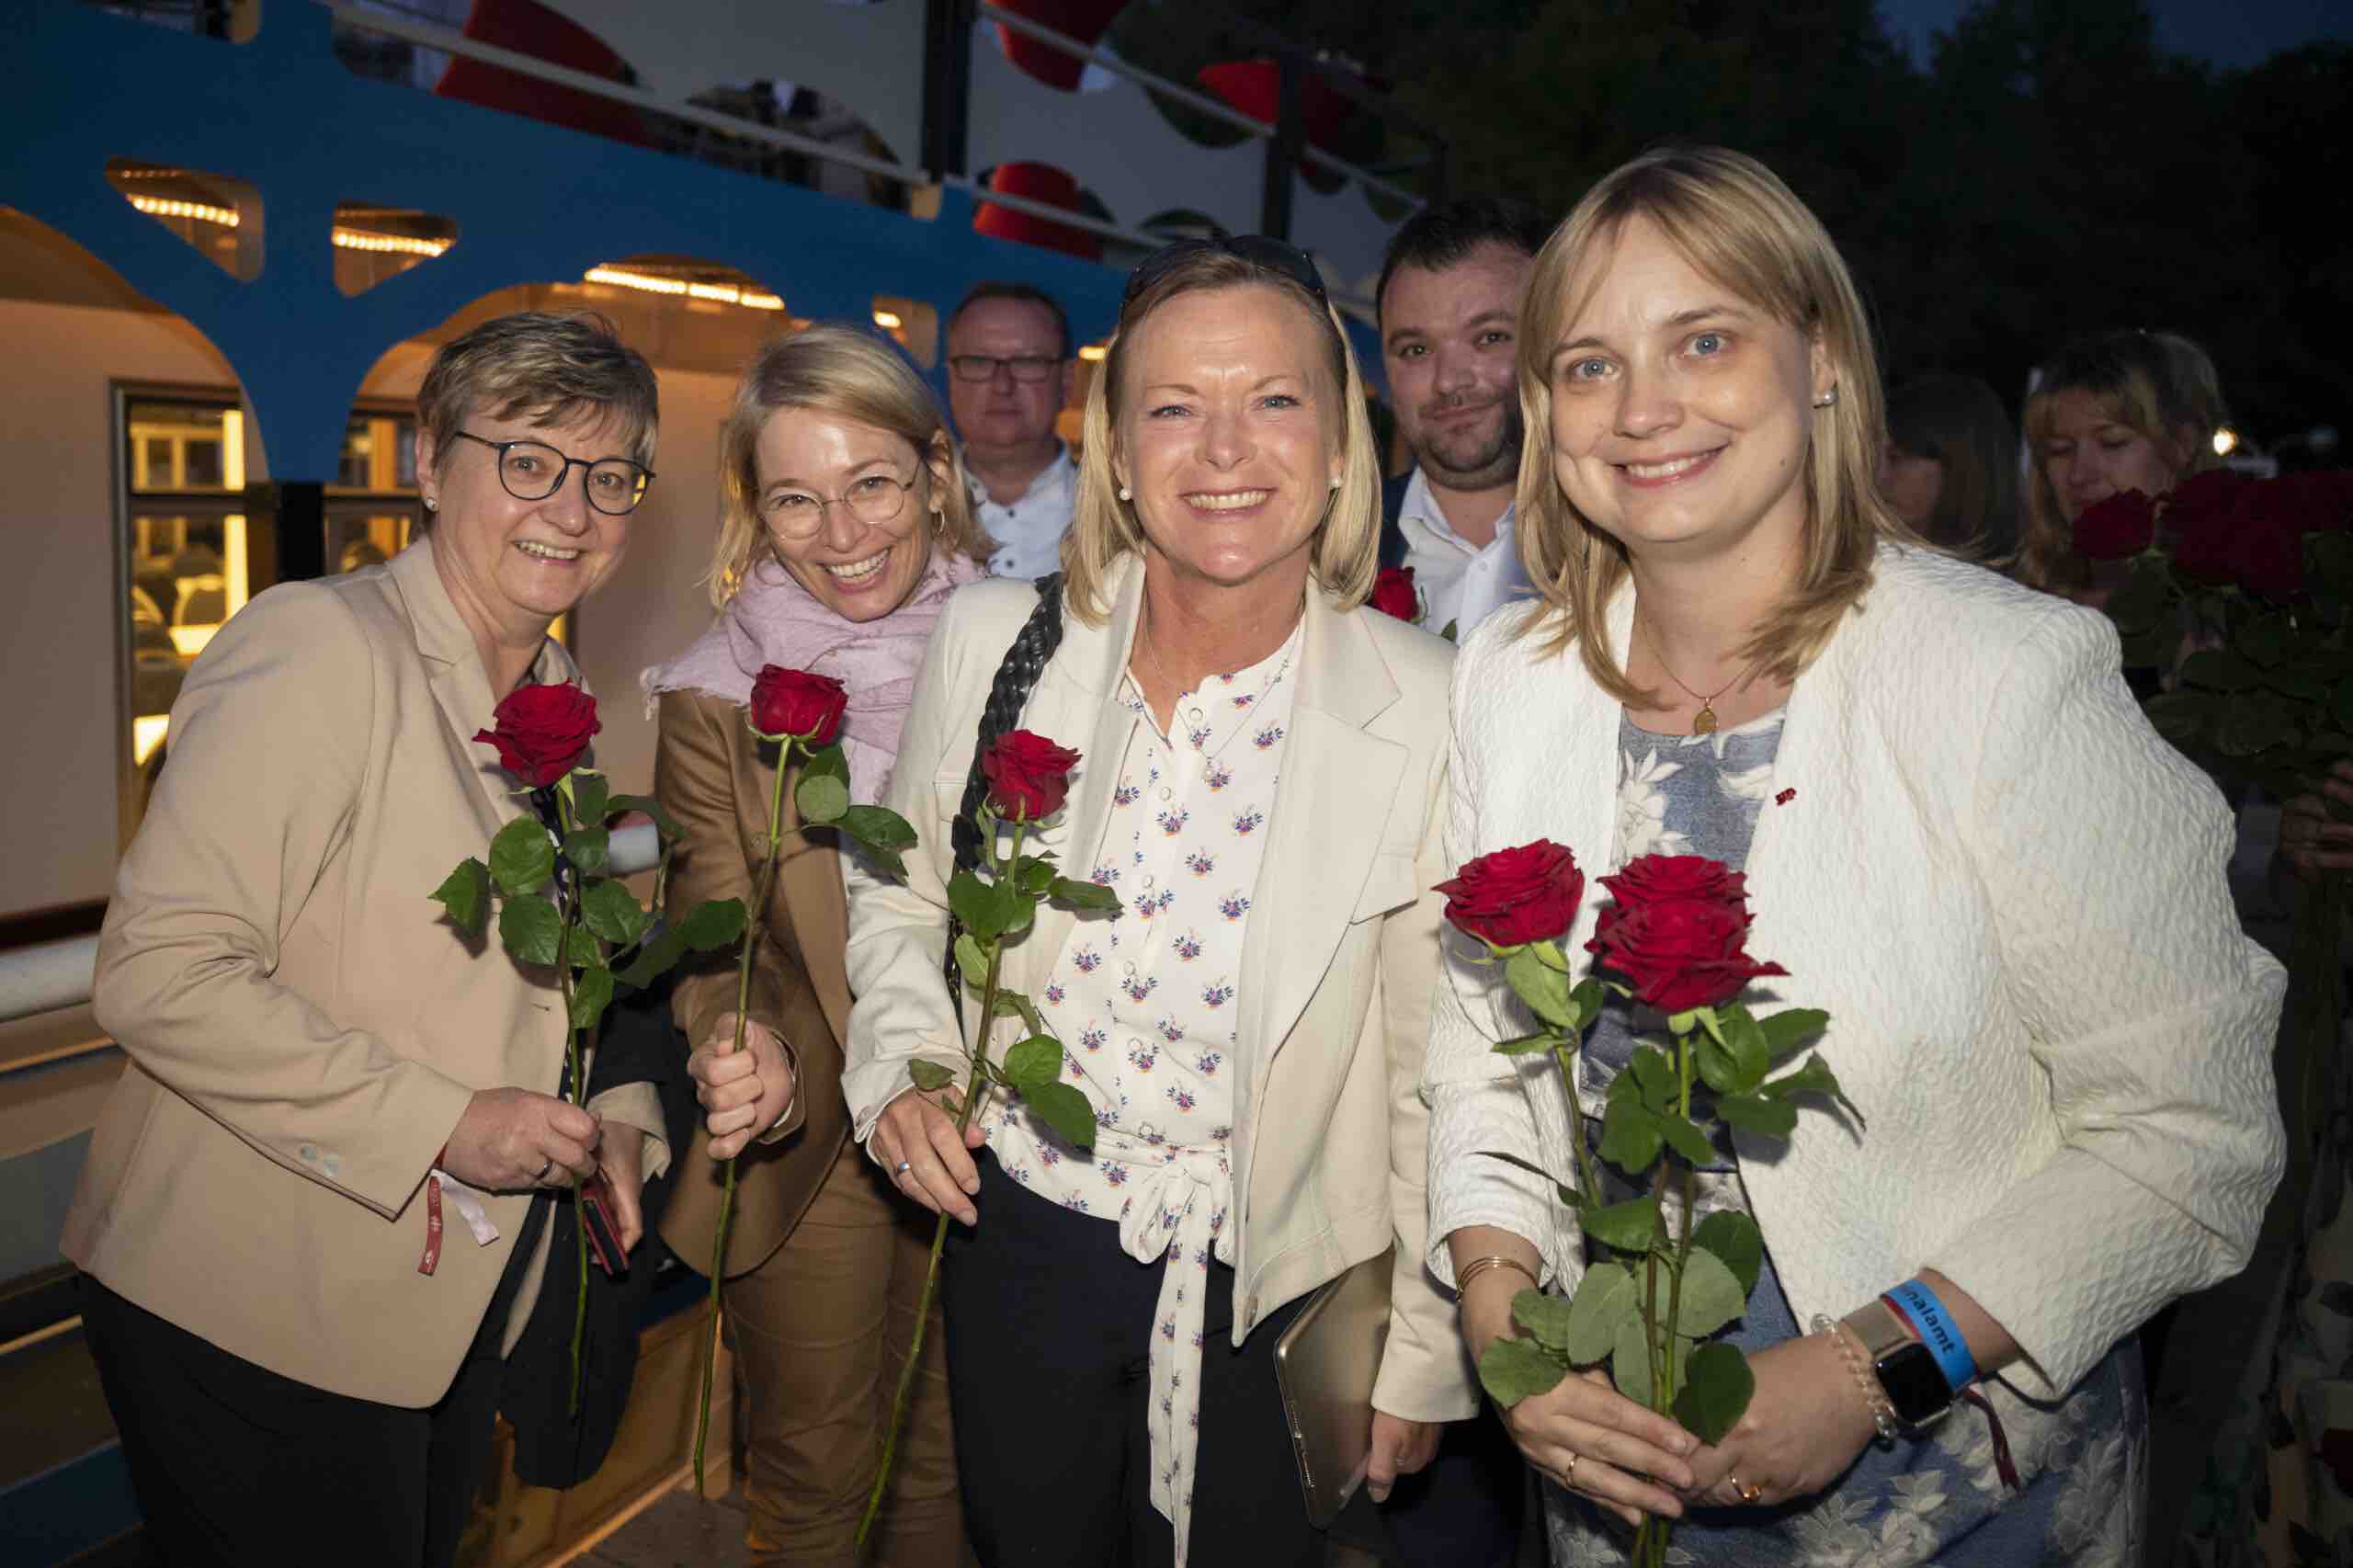 Marja-Liisa Völlers wurde zur neuen Sprecherin des Seeheimer Kreis gewählt!